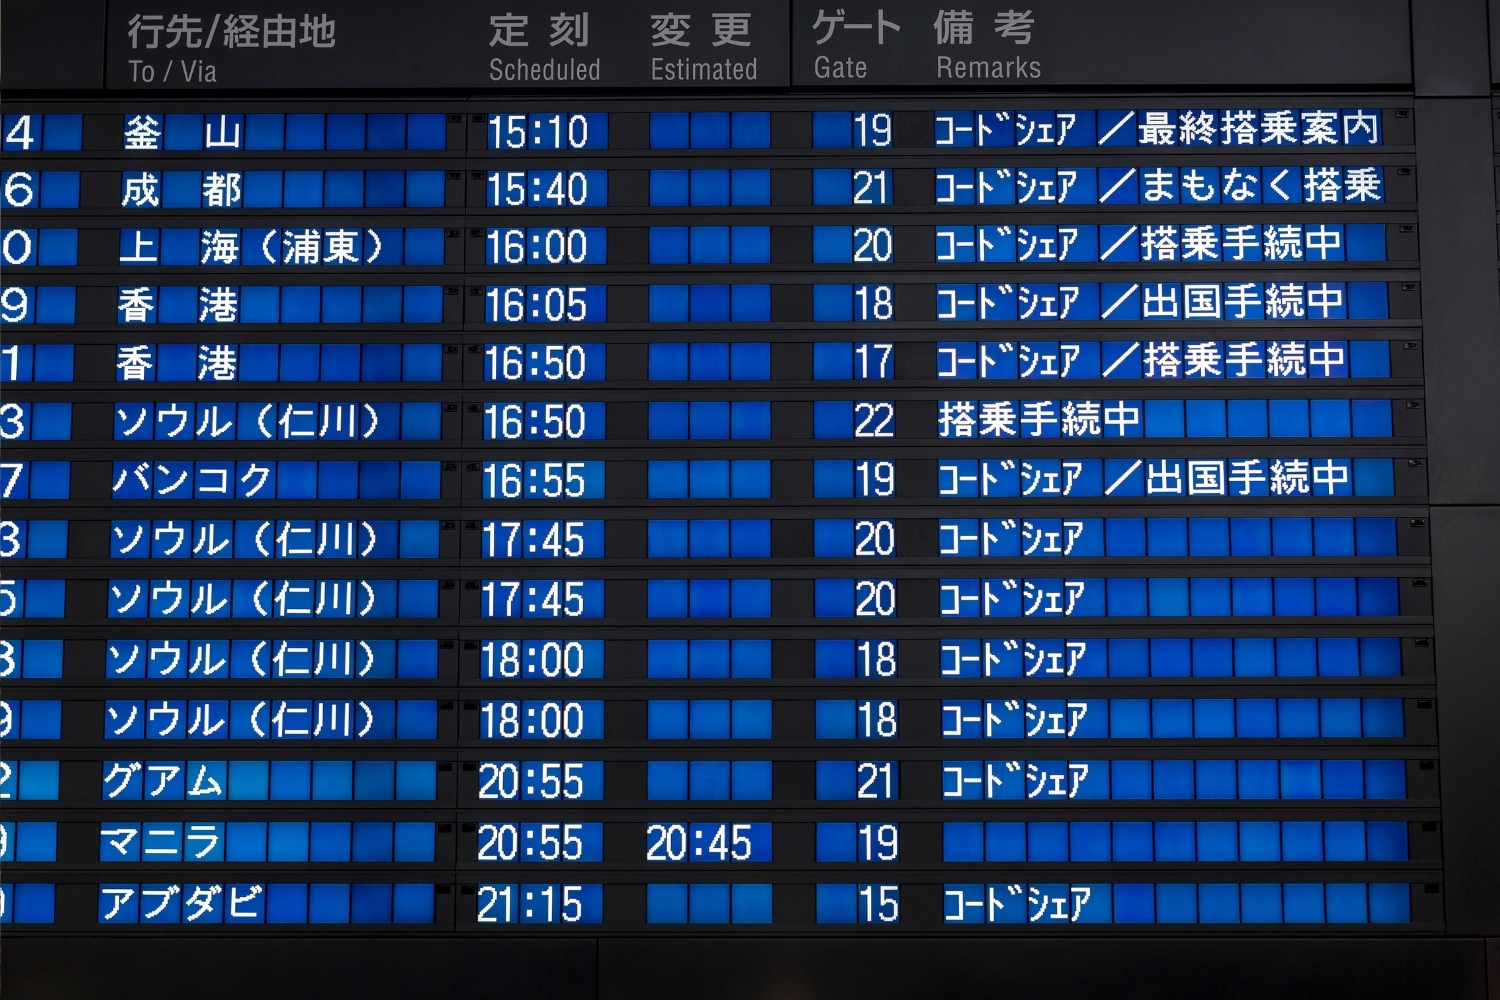 panel de salidas aviones japoneses